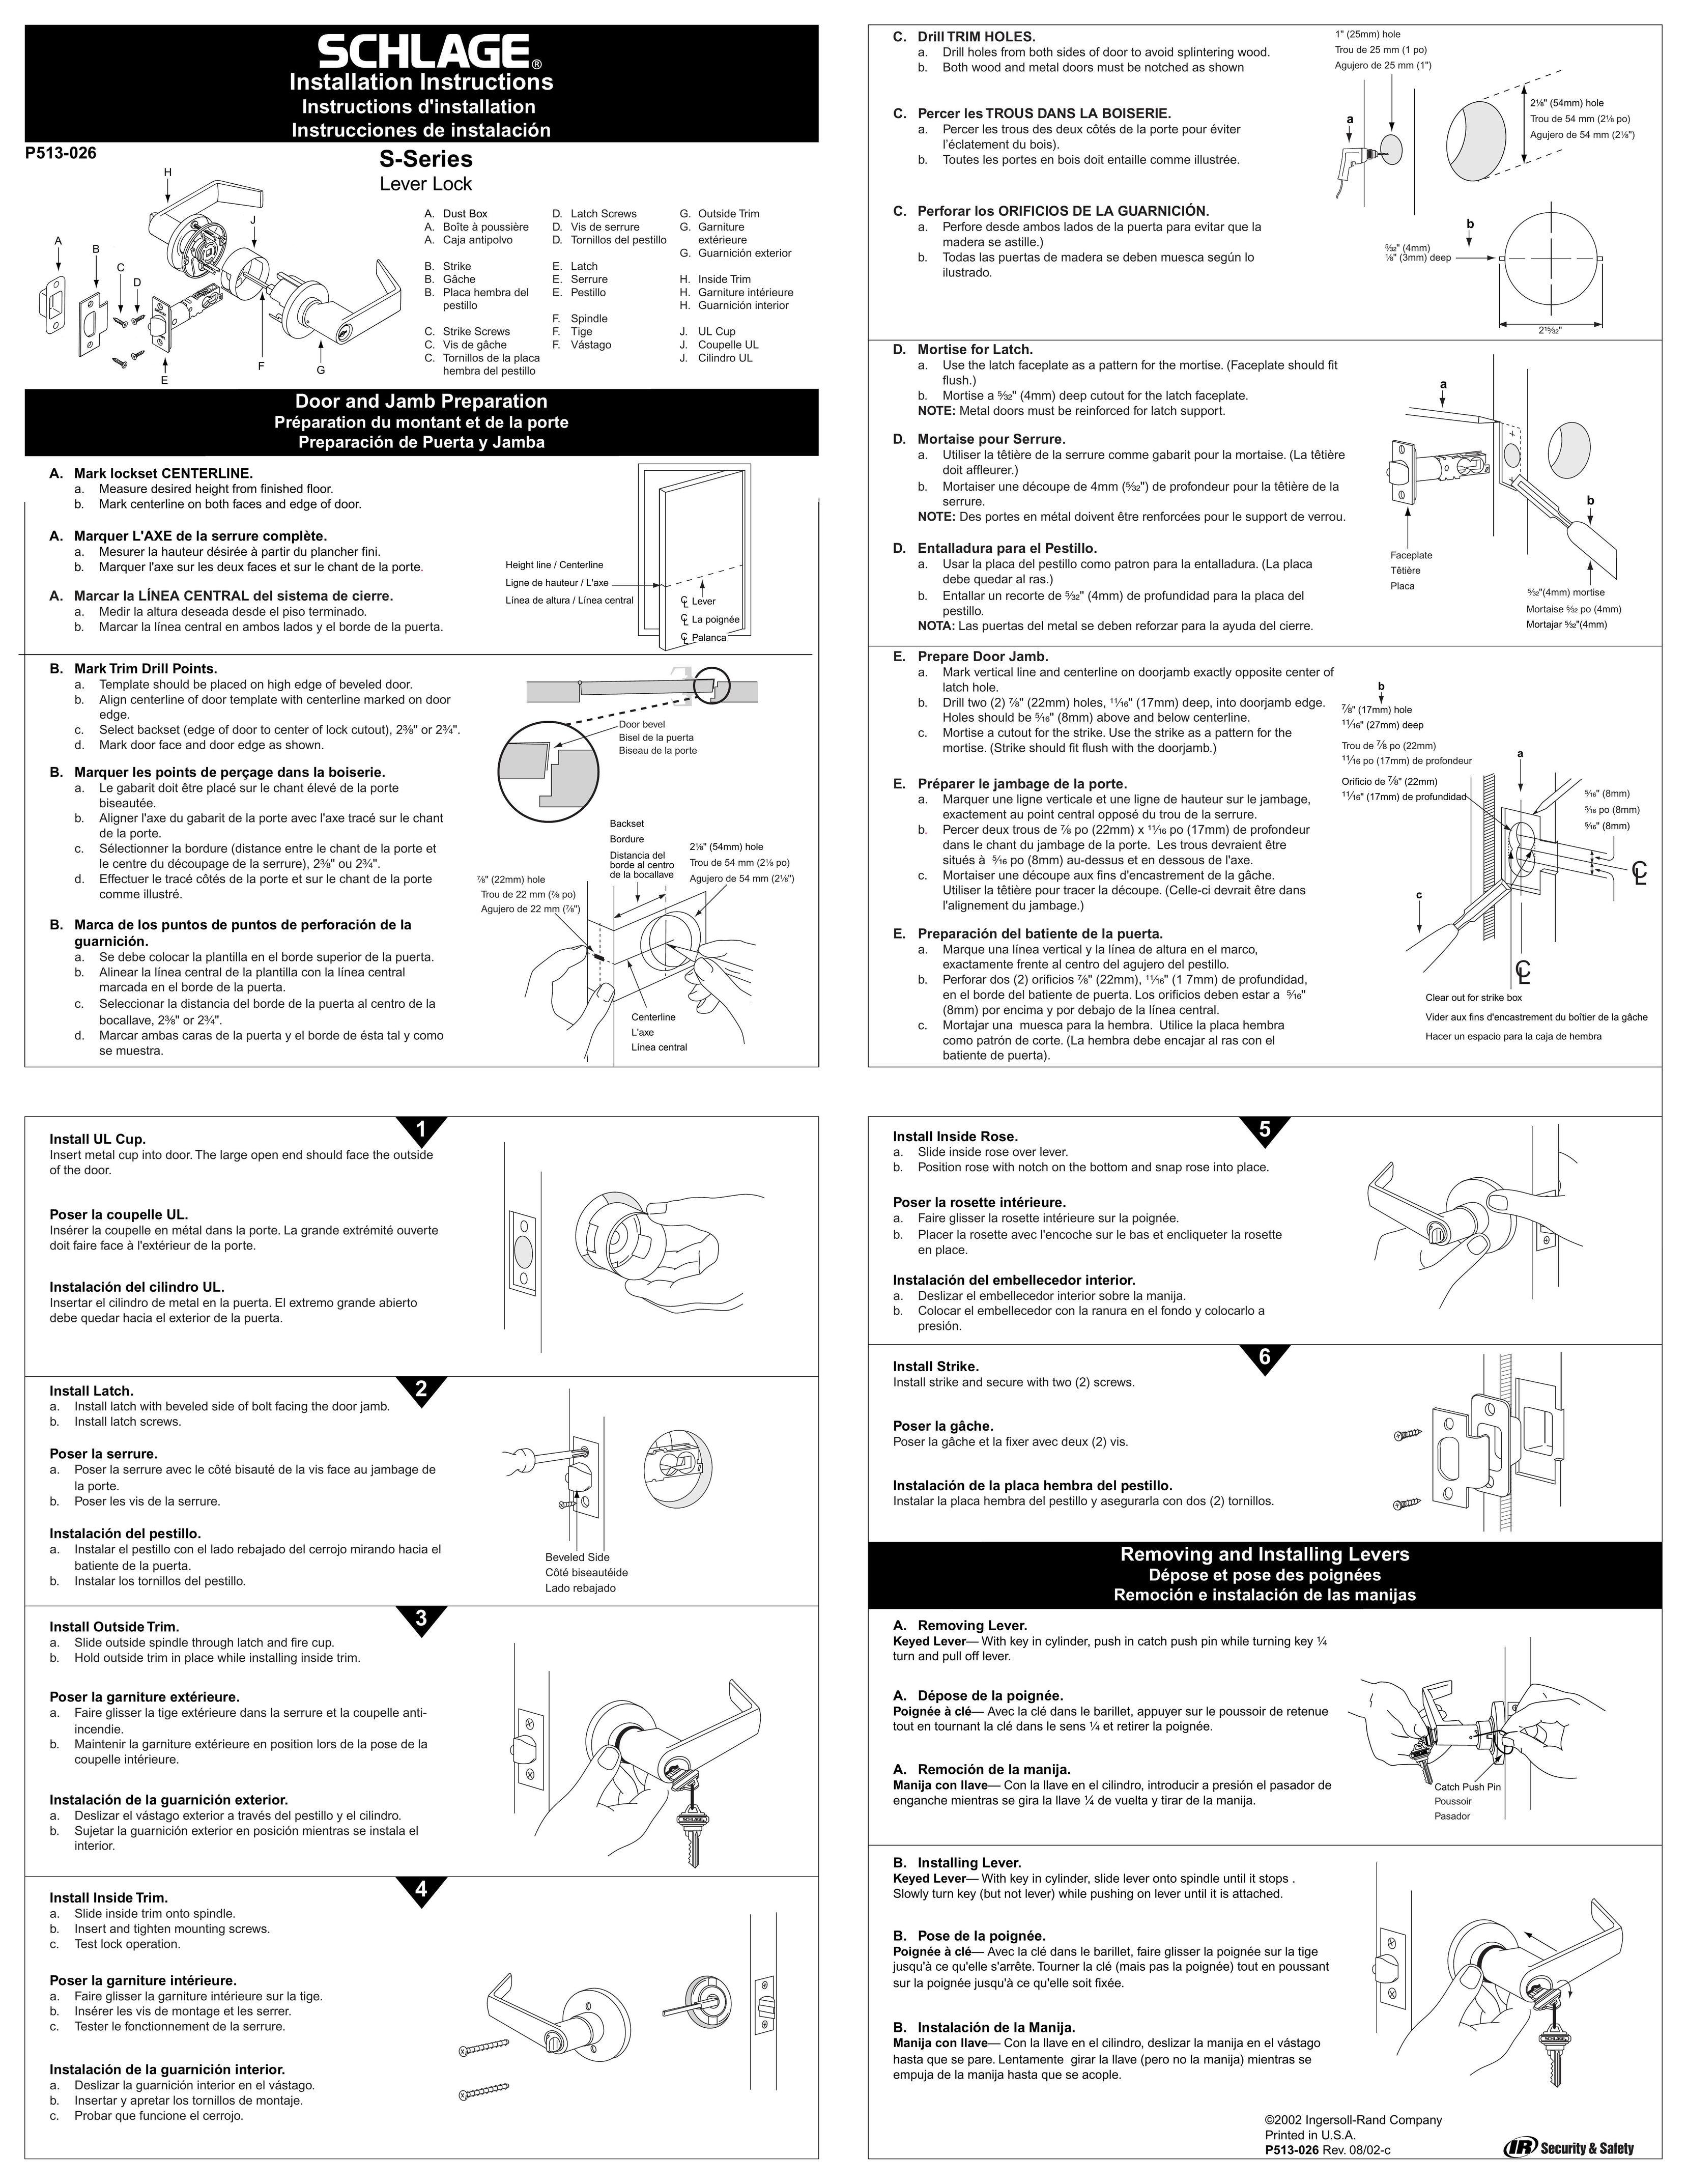 Schlage P513-026 Door User Manual